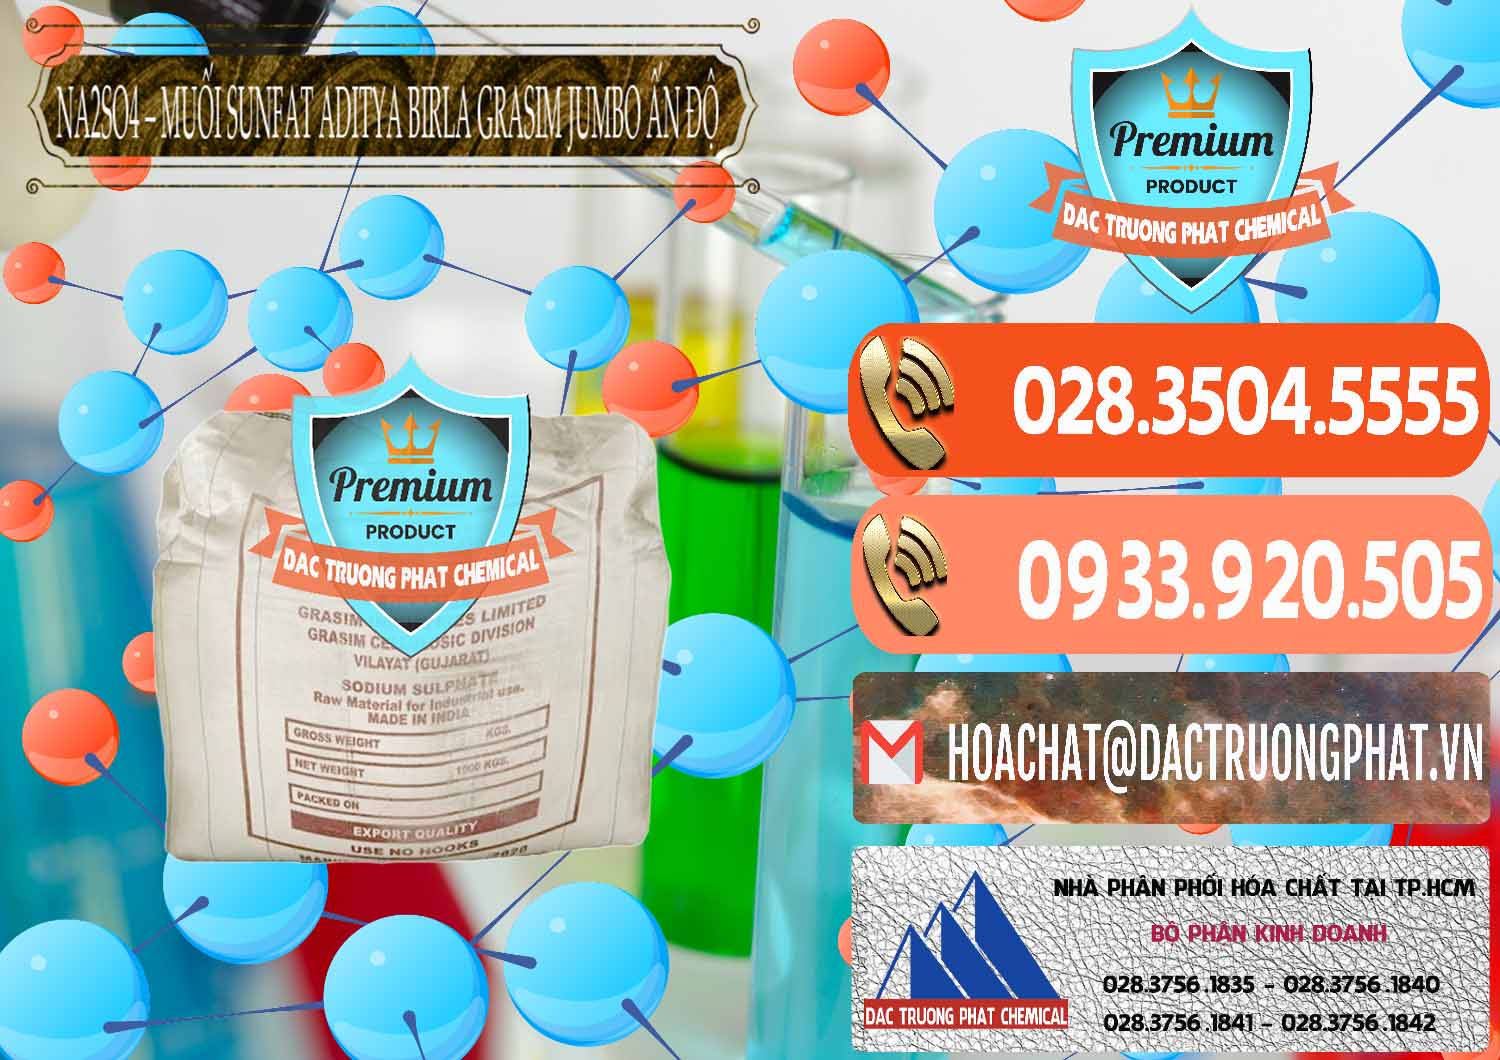 Công ty chuyên nhập khẩu và bán Sodium Sulphate - Muối Sunfat Na2SO4 Jumbo Bành Aditya Birla Grasim Ấn Độ India - 0357 - Đơn vị chuyên kinh doanh - cung cấp hóa chất tại TP.HCM - hoachatmientay.com